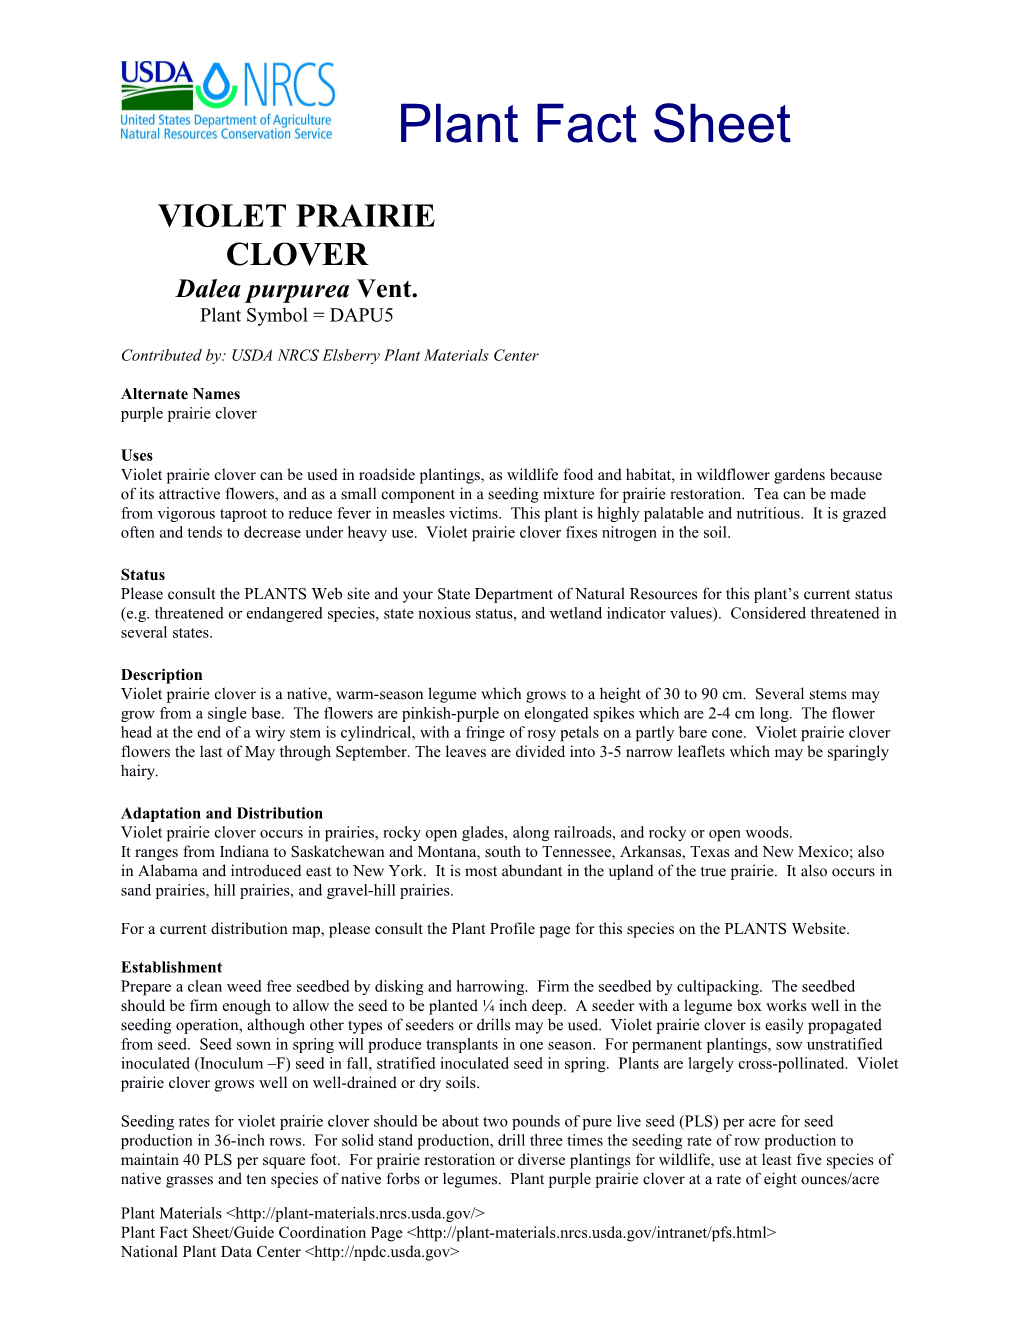 Violet Prairie Clover s1